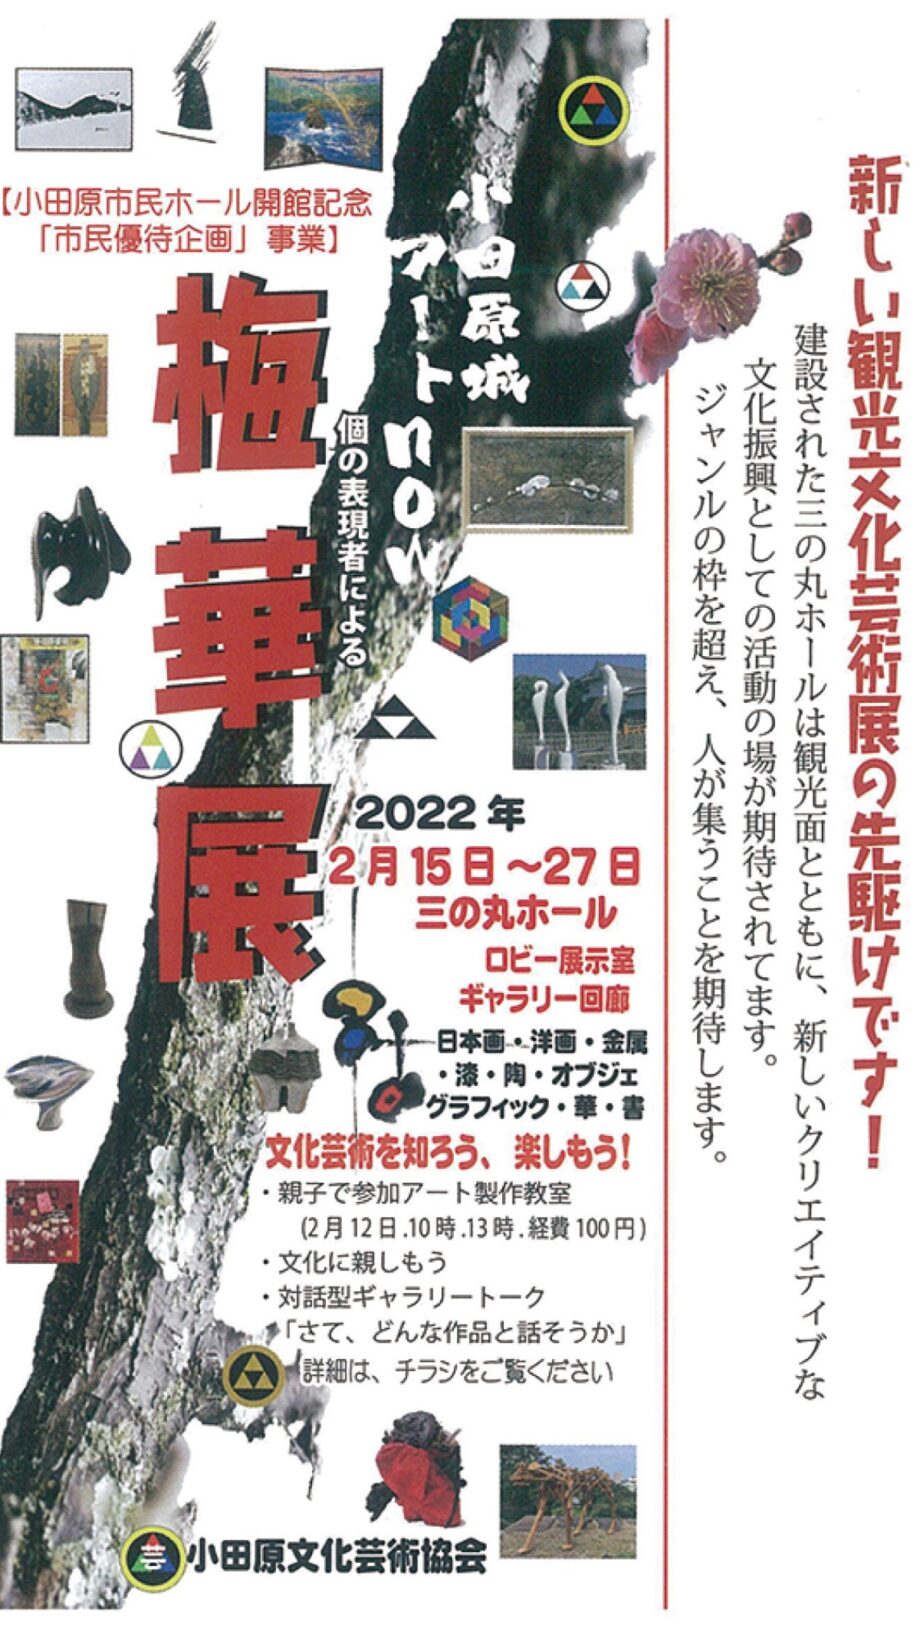 小田原文化芸術協会が「小田原城アートＮOW『梅華展』」を初開催！作品展示やワークショップなど